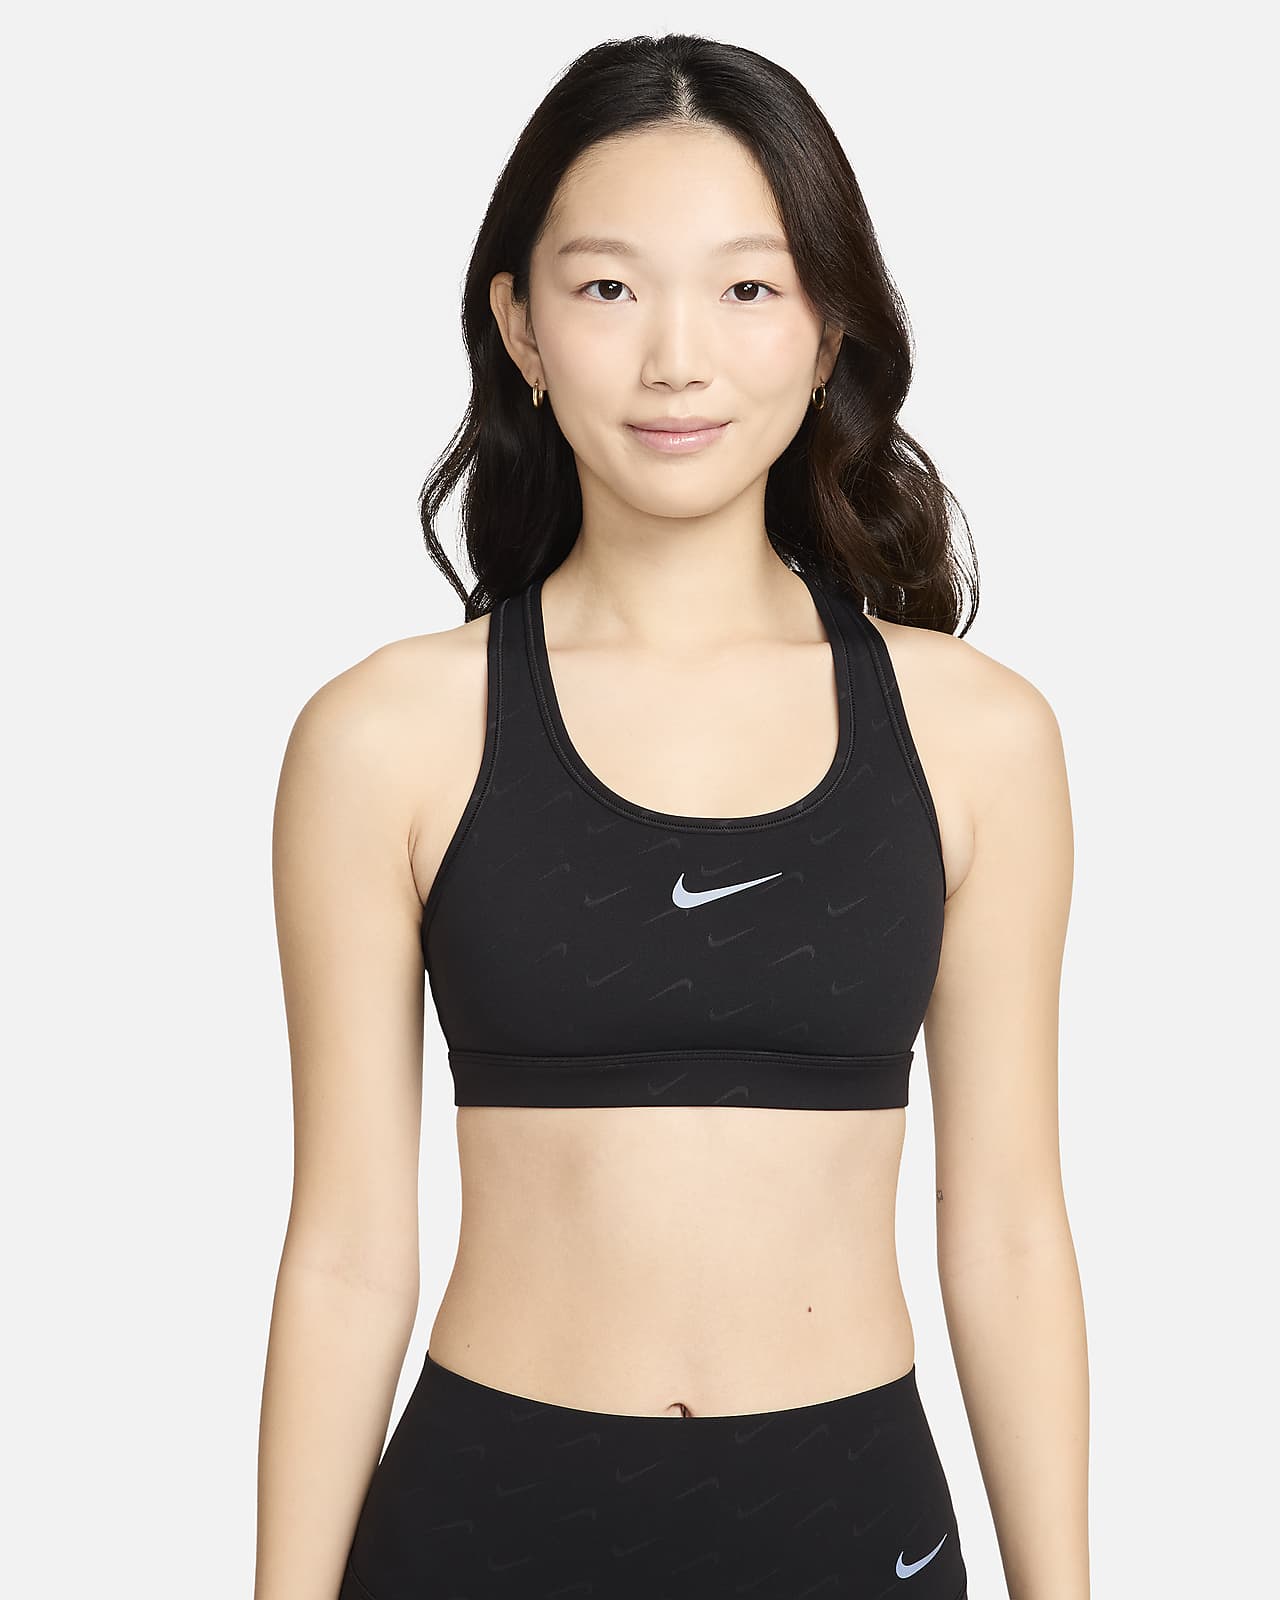 Women's Sports Bras. Nike ID